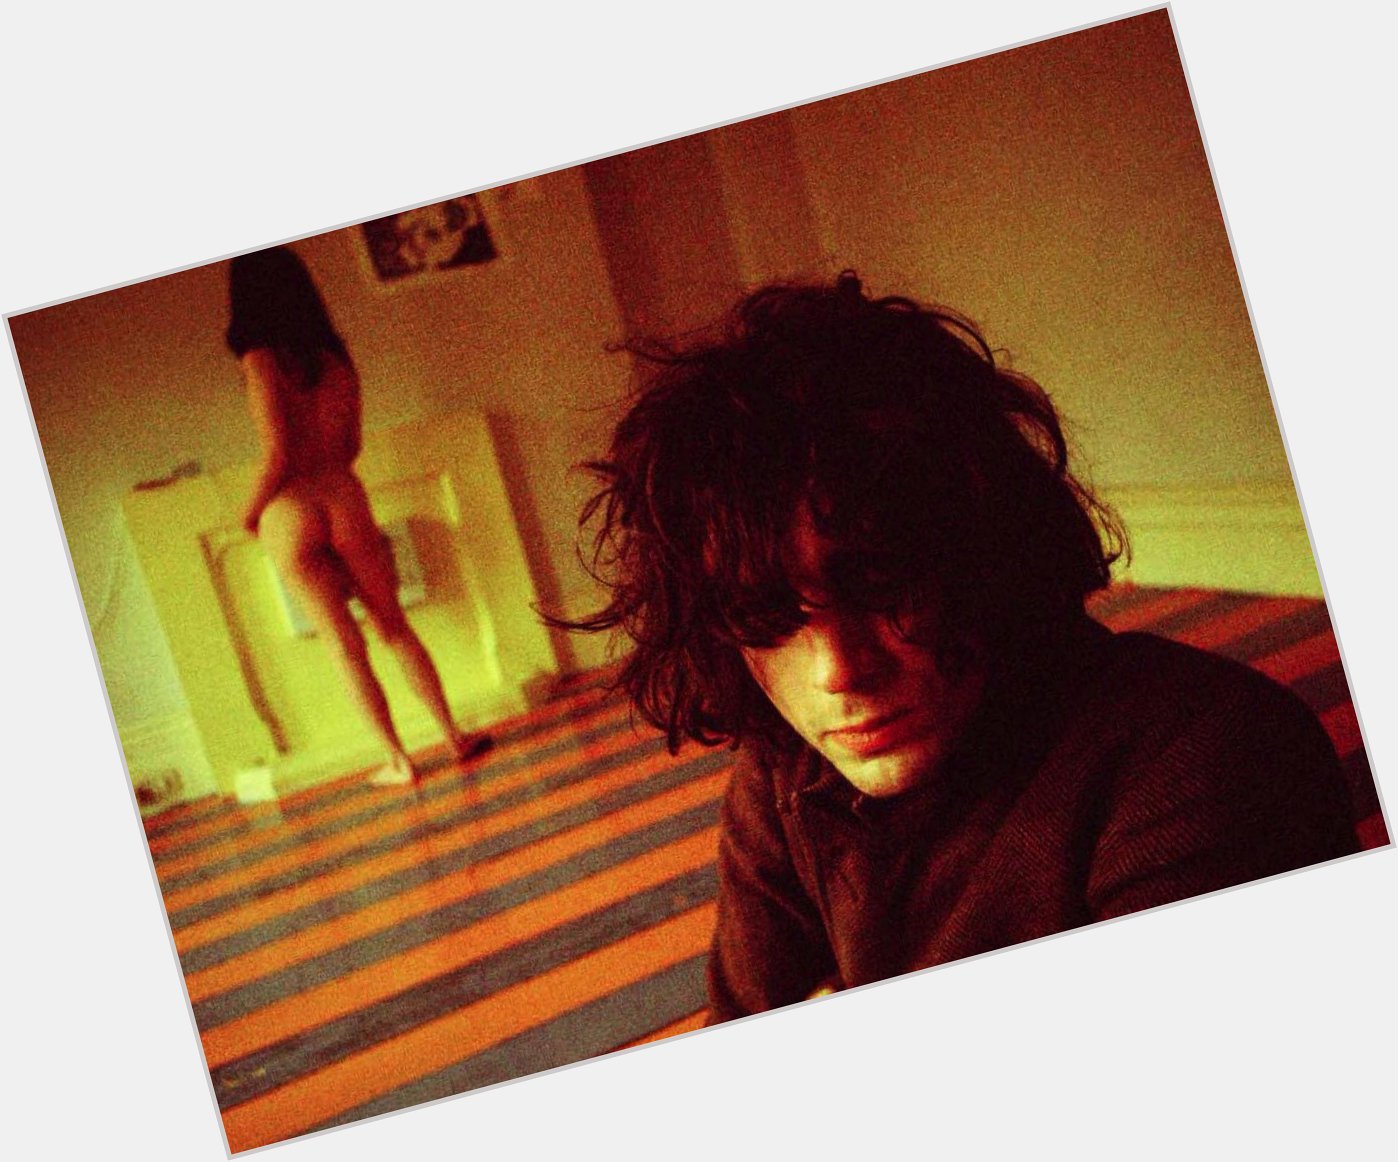 6 de Janeiro de 1946 nascia o nosso imortal \"Crazy Diamond\".
Happy birthday, Syd Barrett!!! 